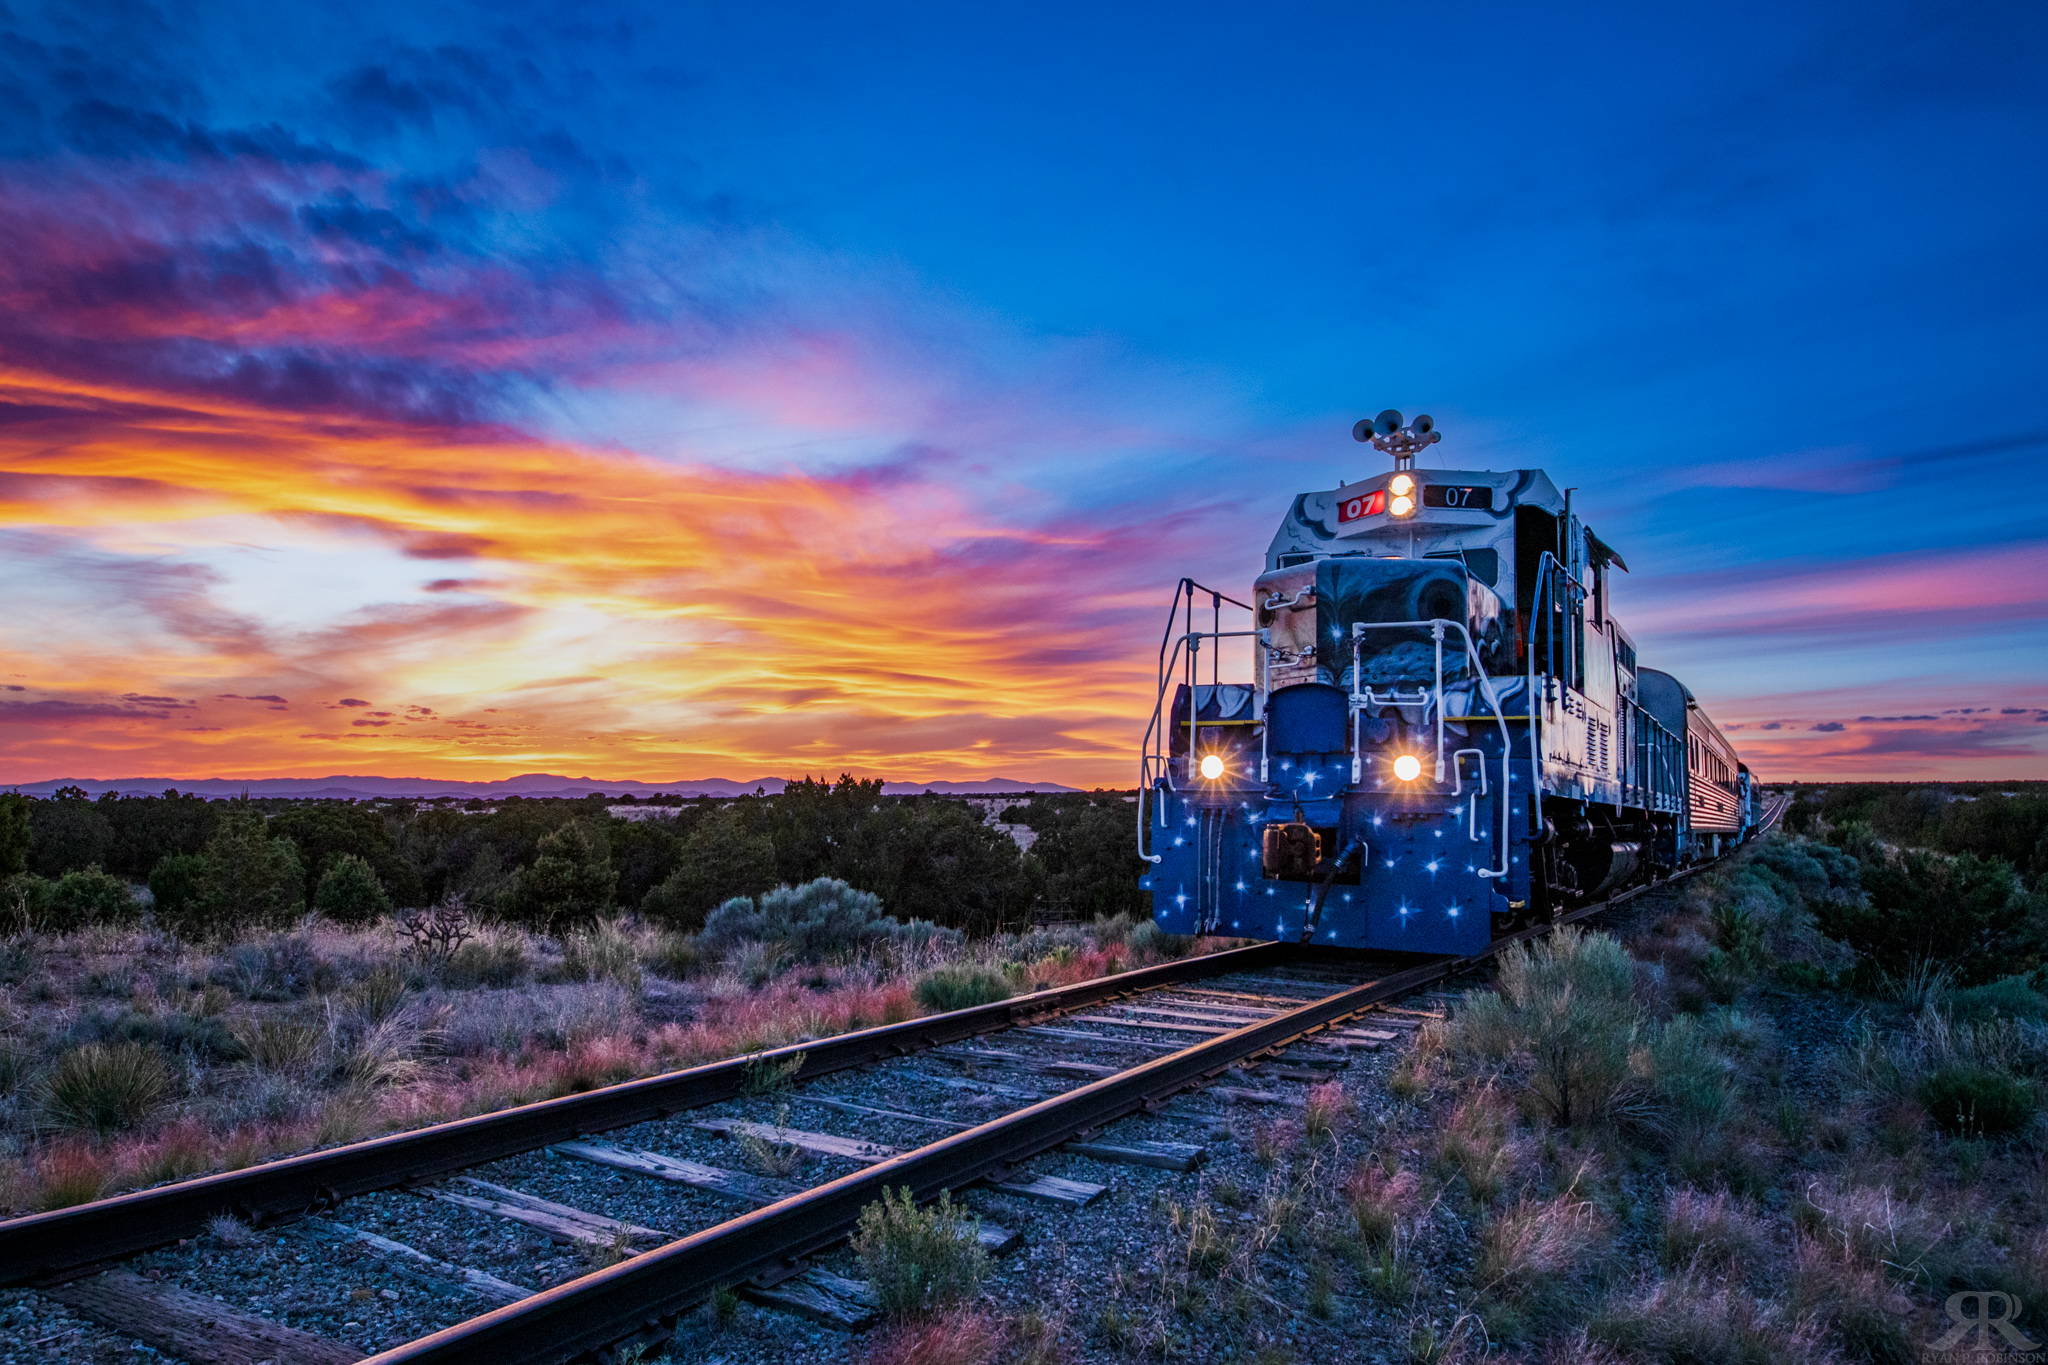 Sky Railway | Train Rides in Santa Fe, New Mexico